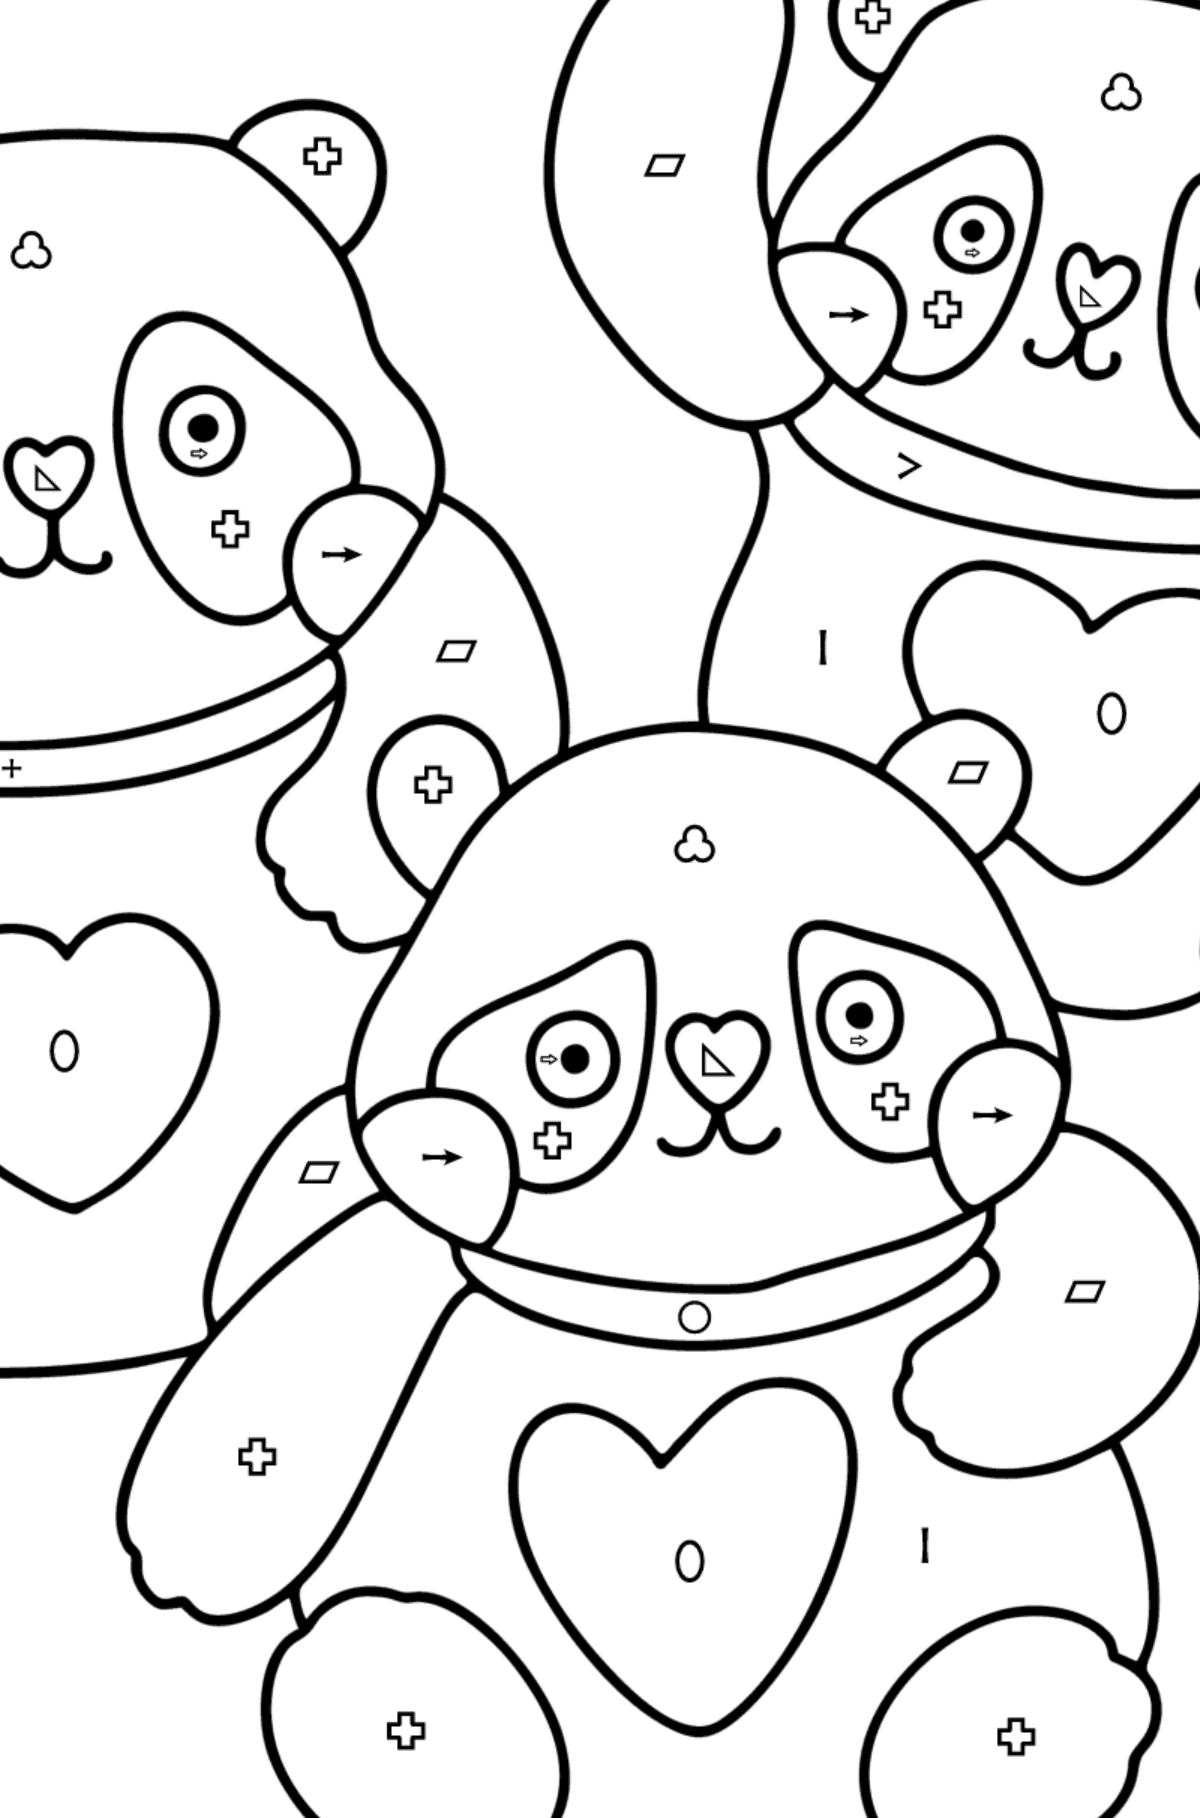 Disegno di panda kawaii da colorare - Colorare per simboli e forme geometriche per bambini